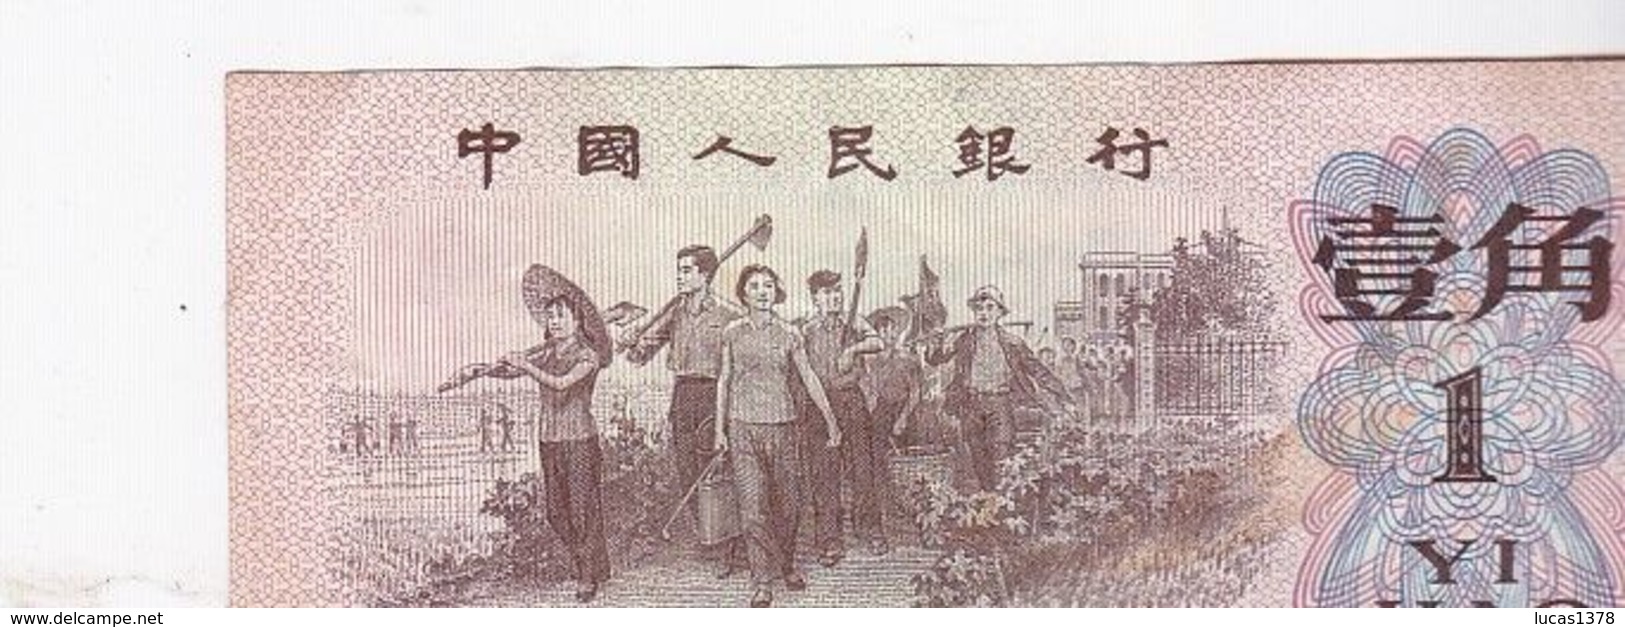 Billet De Banque Chine Zhongguo Renmin Yinhang - 1 Yi Jiao - 1962 / NEUF - China